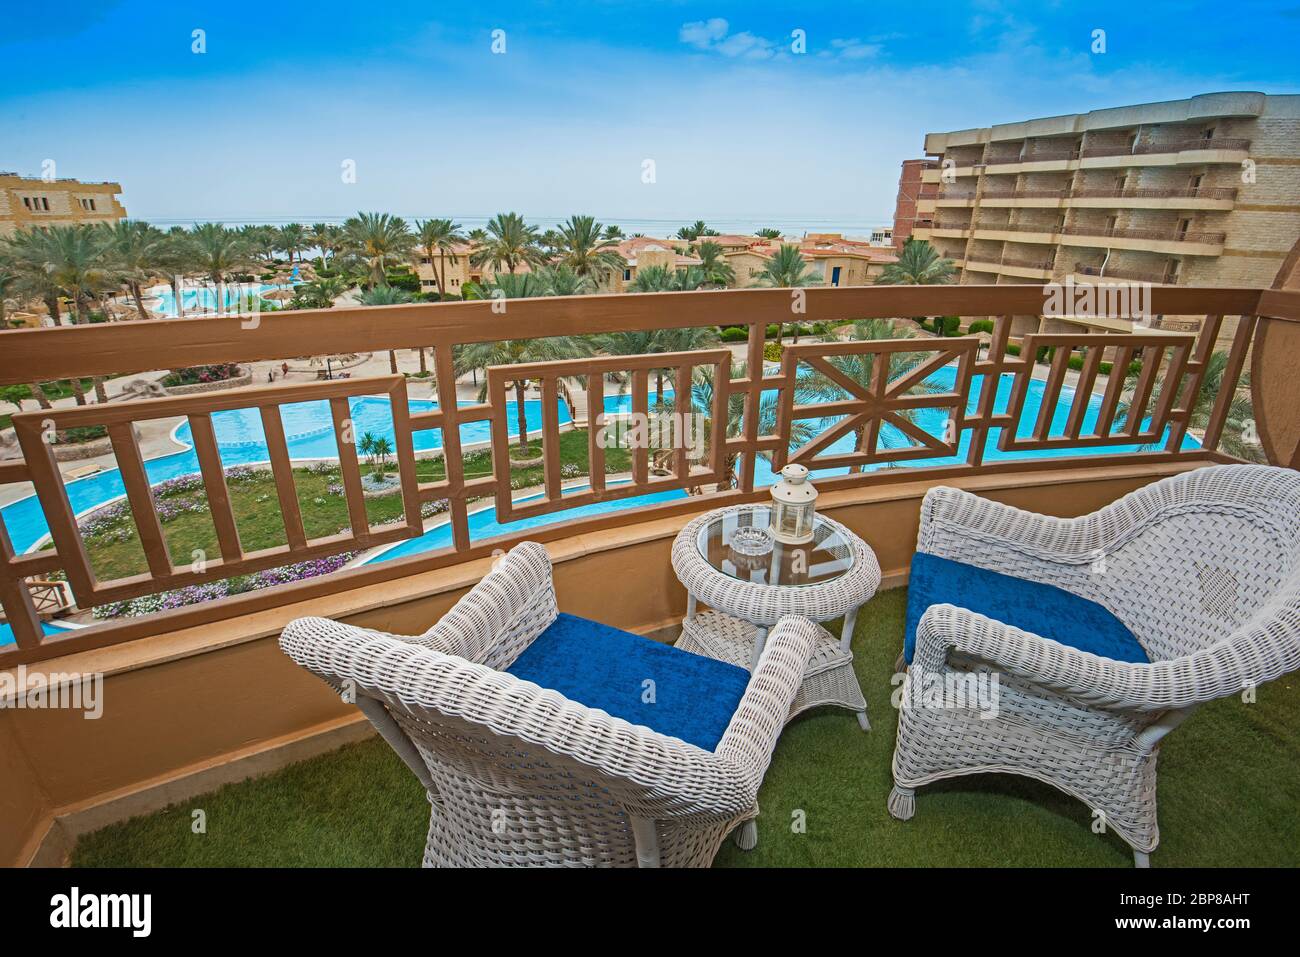 Meubles de terrasse d'un appartement de luxe dans la région de tropical resort avec meubles en plastique et vue sur la piscine Banque D'Images